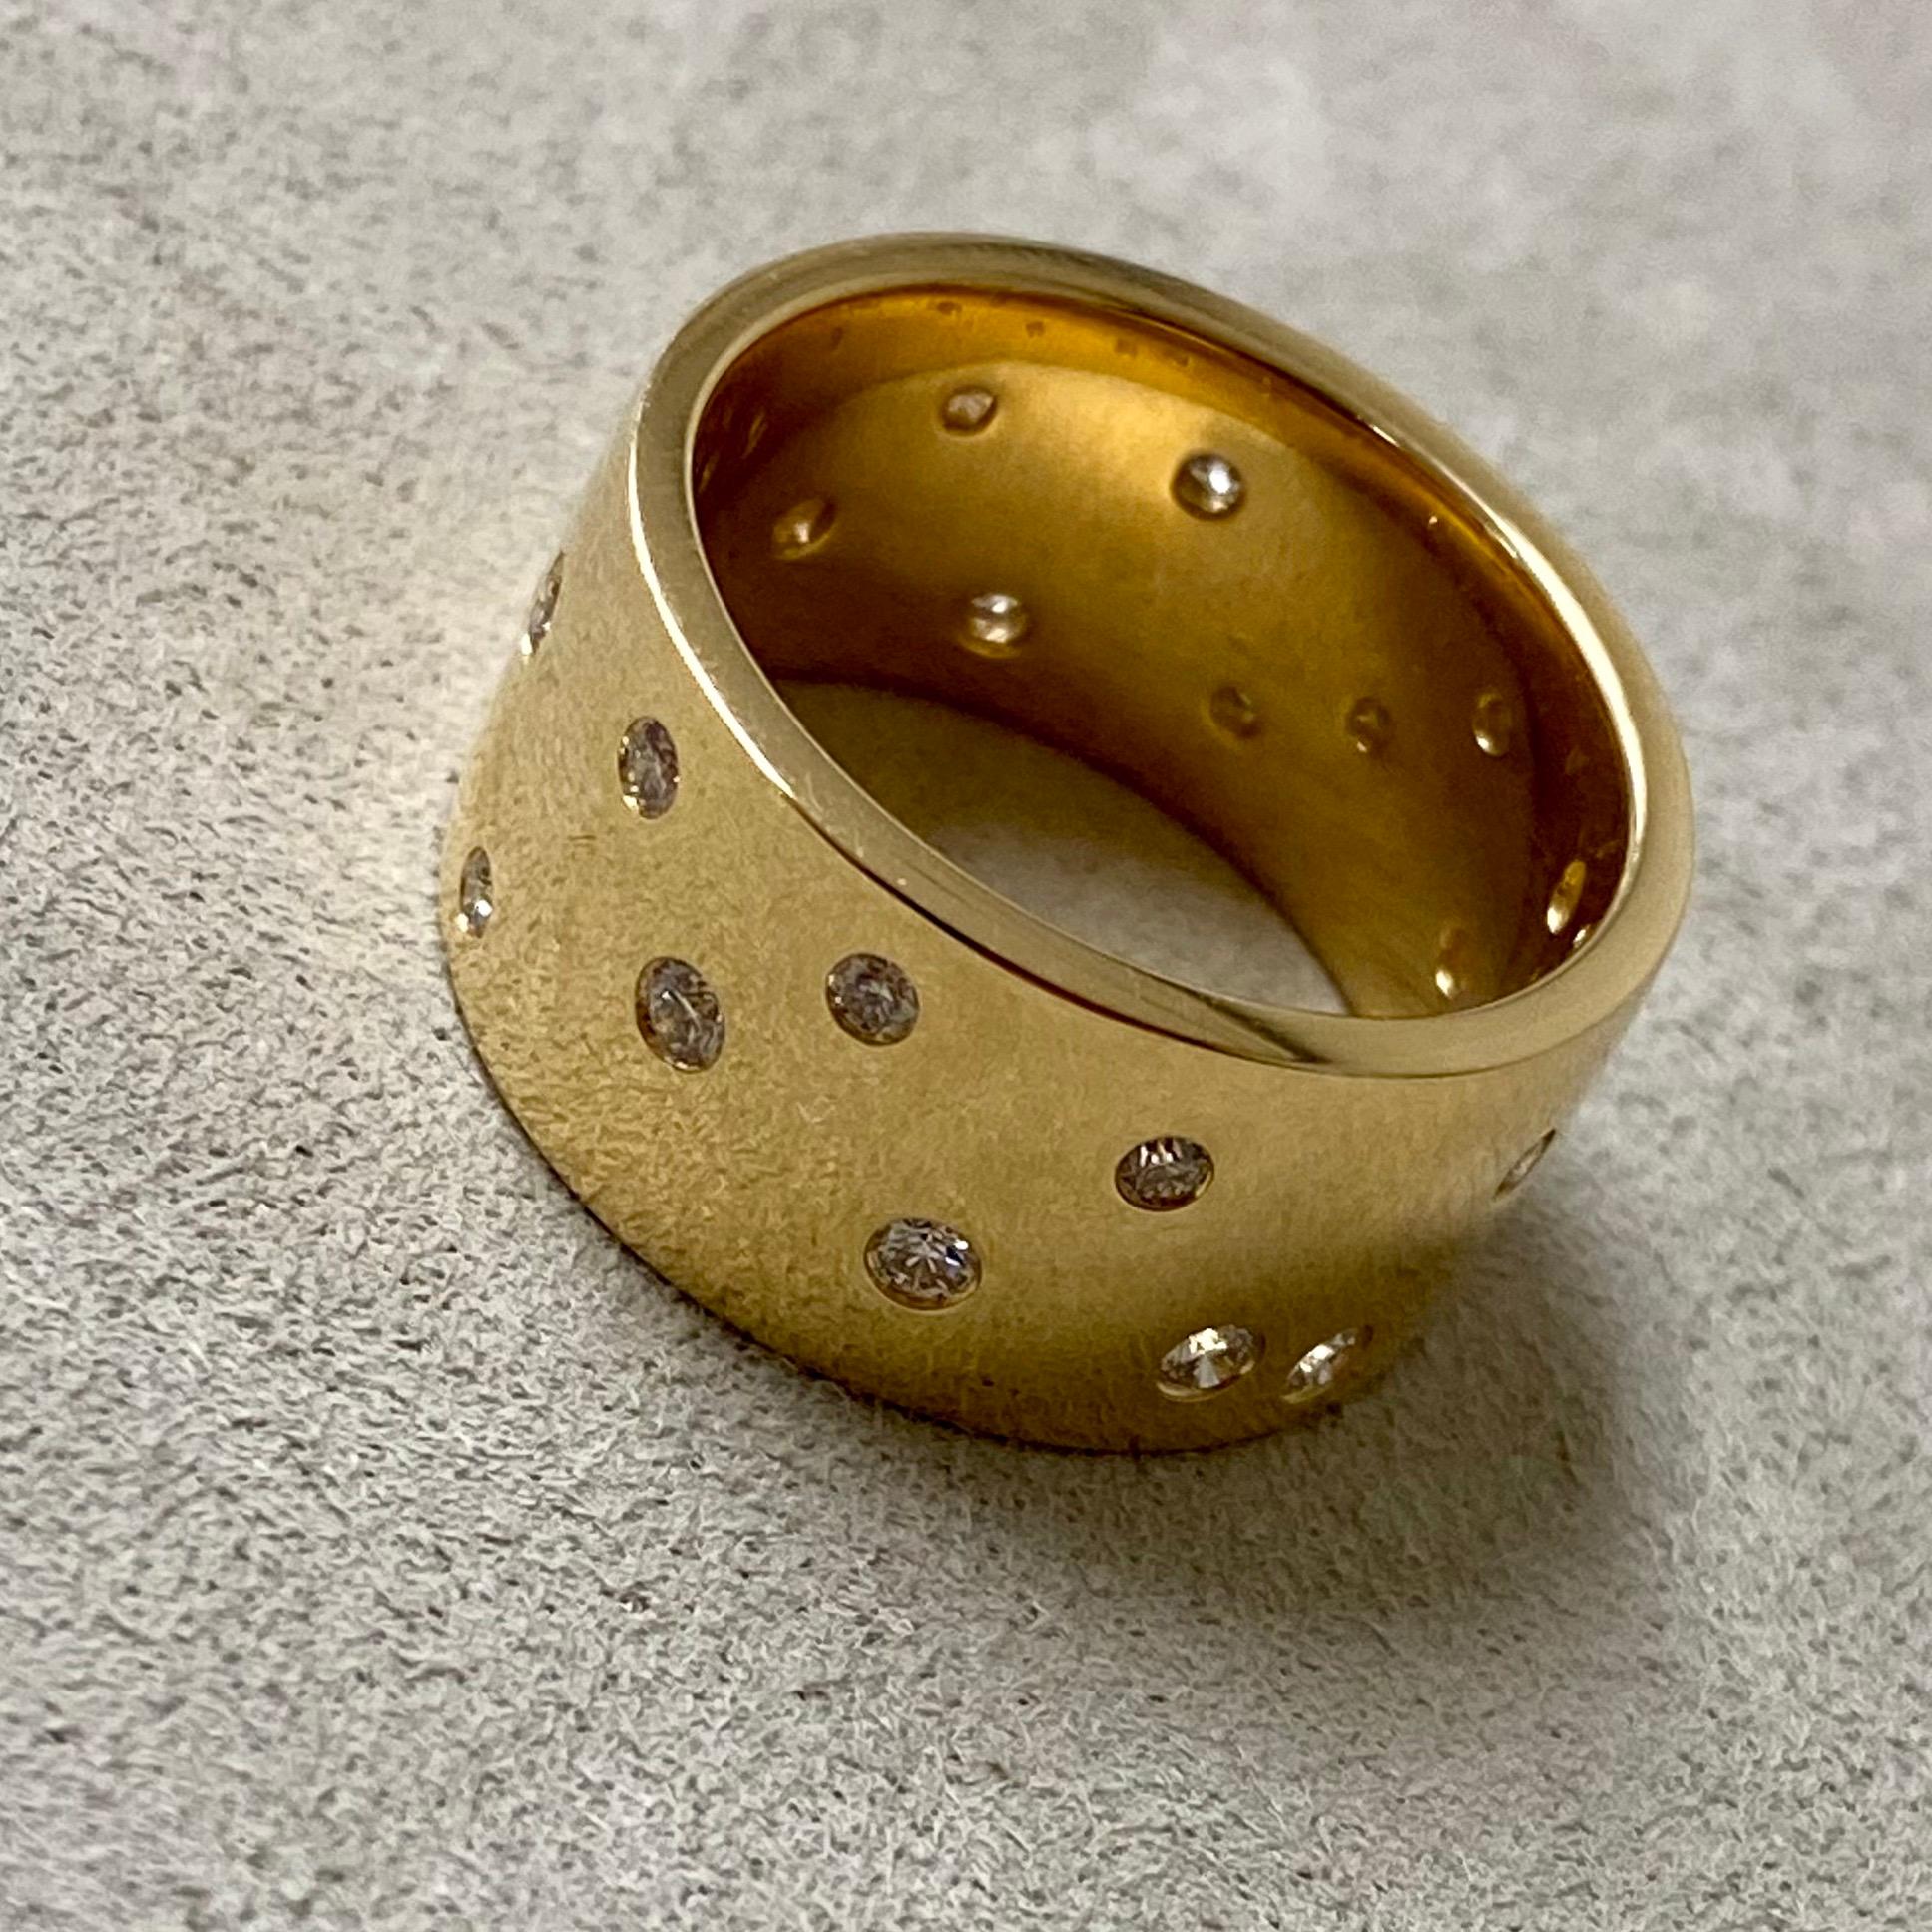 Hergestellt aus 18 Karat Gelbgold
Diamanten ca. 1.3 Karat.
Ringgröße US 6.5, kann nach Wunsch angepasst werden
Limitierte Auflage

Dieser exklusive Ring in limitierter Auflage wurde in Handarbeit aus 18 Karat Gelbgold gefertigt und mit funkelnden